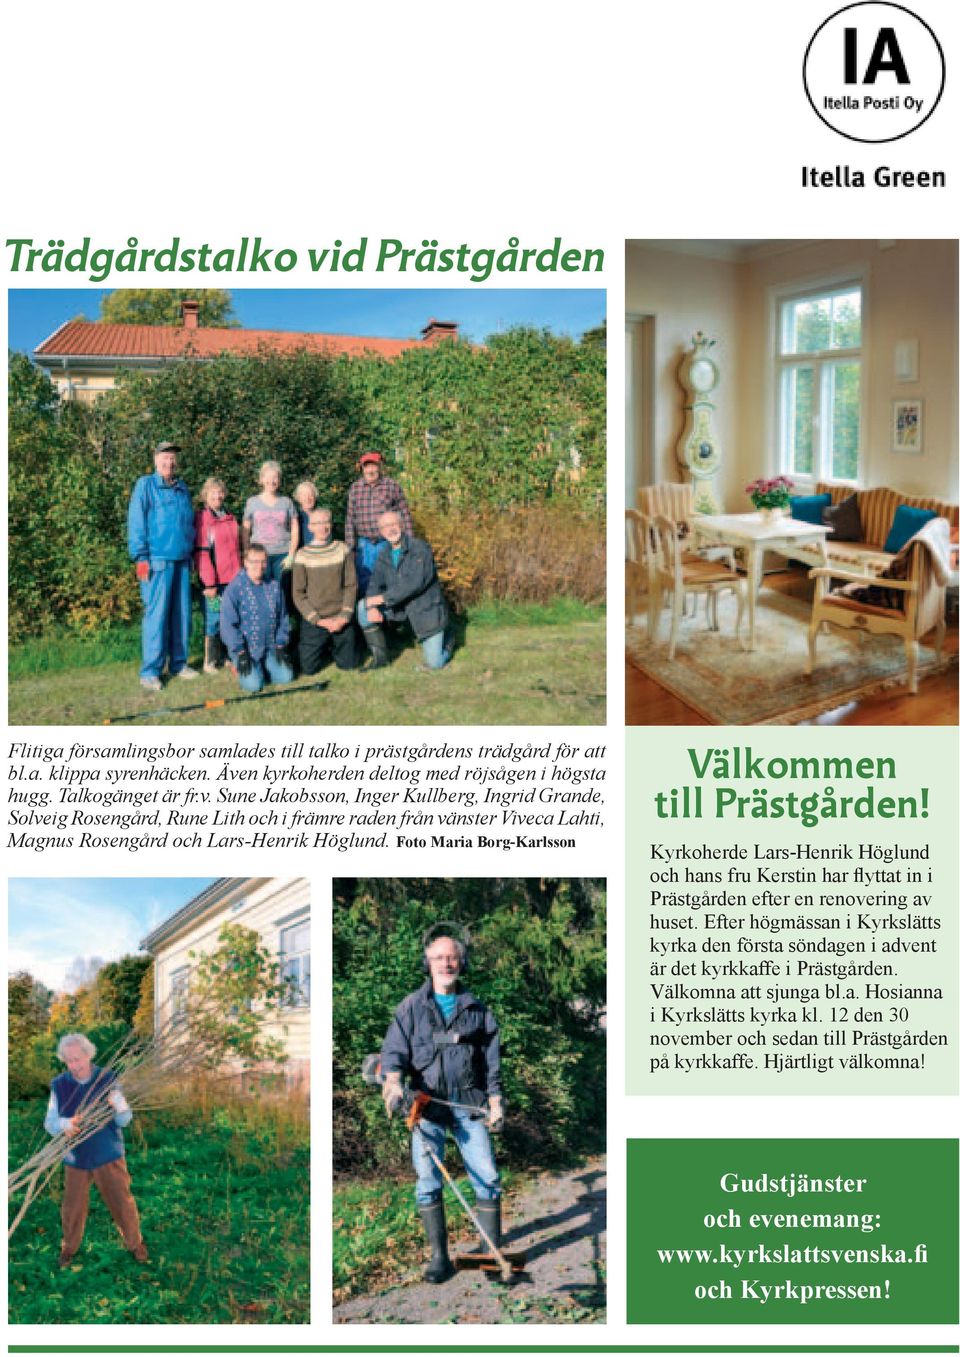 Foto Maria Borg-Karlsson Välkommen till Prästgården! Kyrkoherde Lars-Henrik Höglund och hans fru Kerstin har flyttat in i Prästgården efter en renovering av huset.